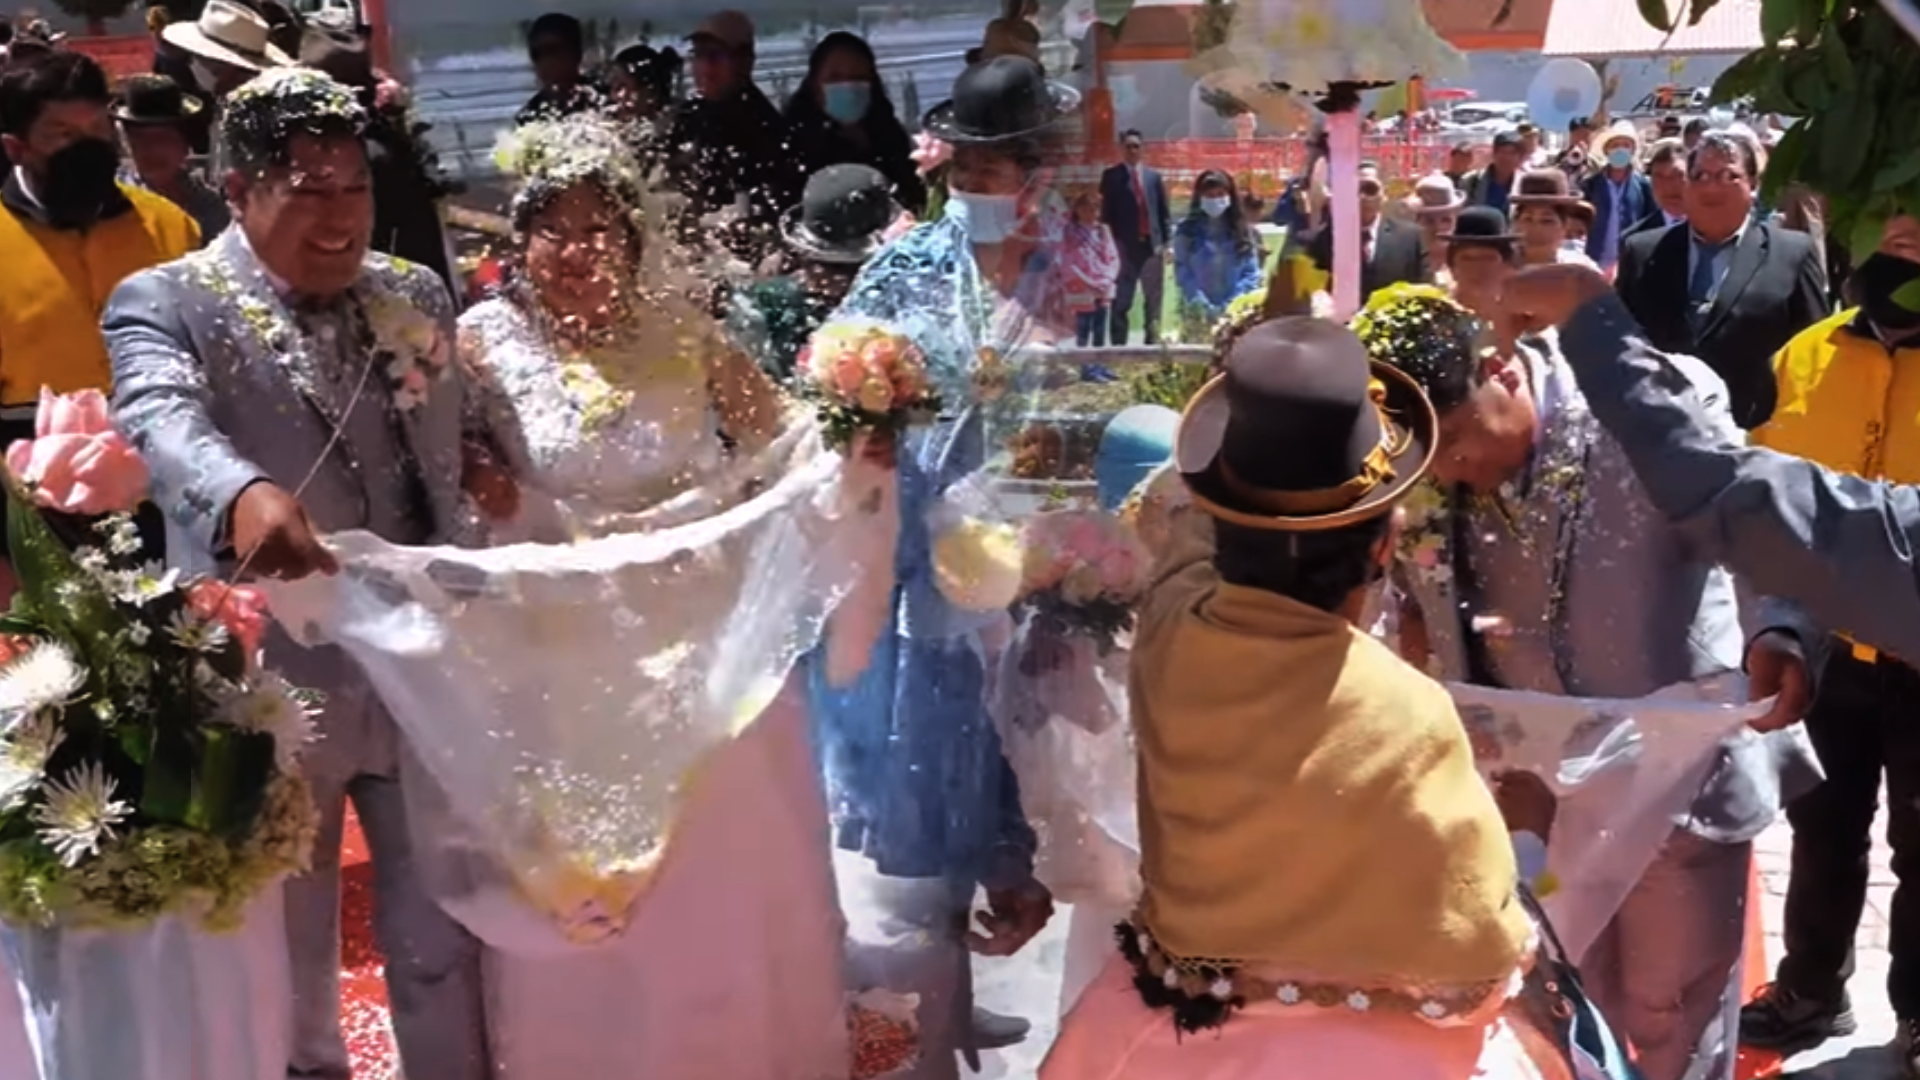 Bodas en Puno: la tradición de lanzar “buena suerte” a los novios